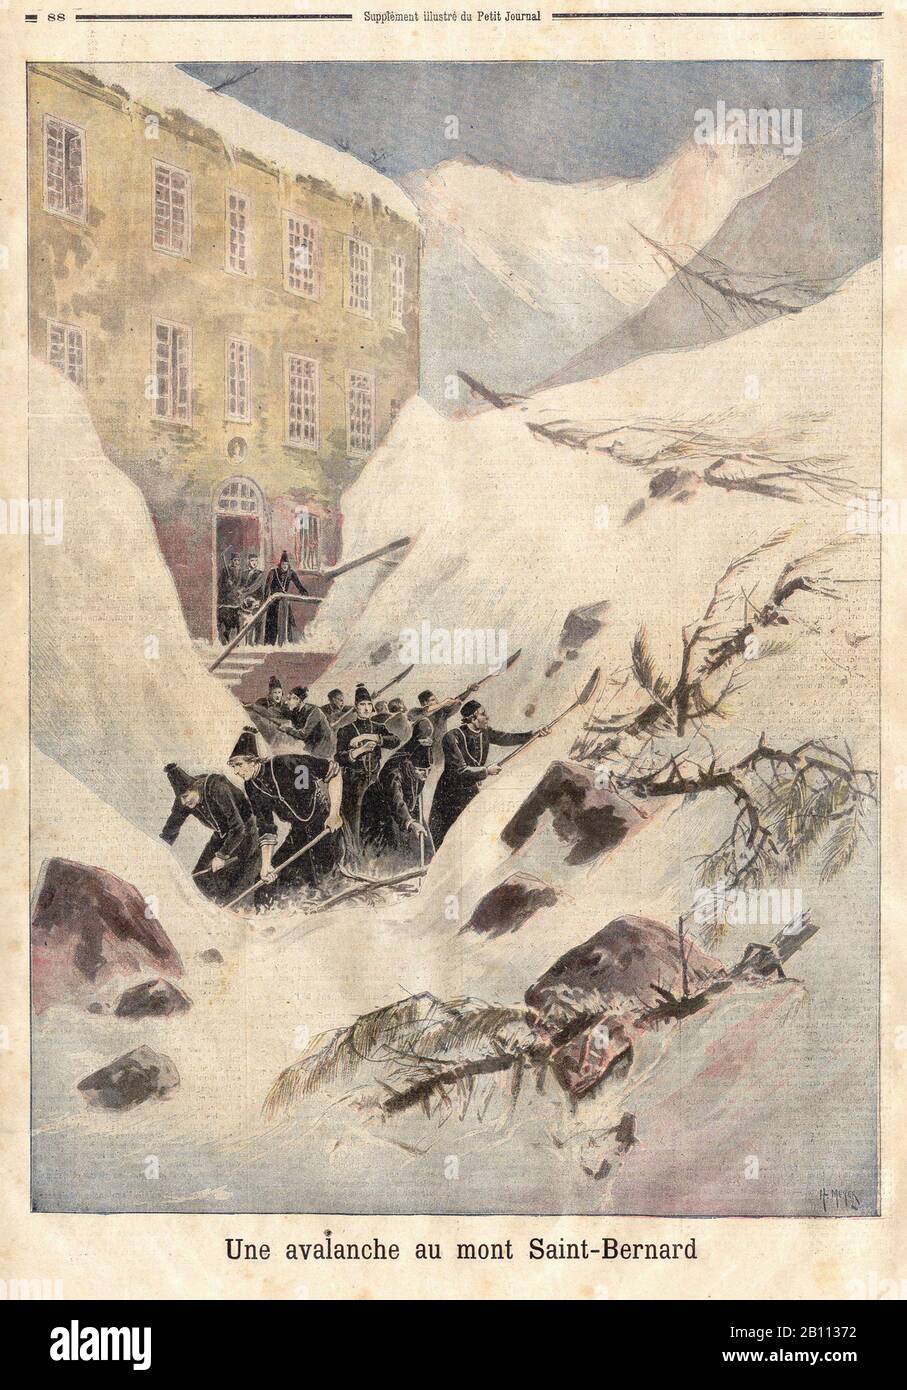 Une avalanche au mont Saint-Bernard - una avalancha en Mont Saint-Bernard - En el periódico francés 'le Petit Journal' - Foto de stock